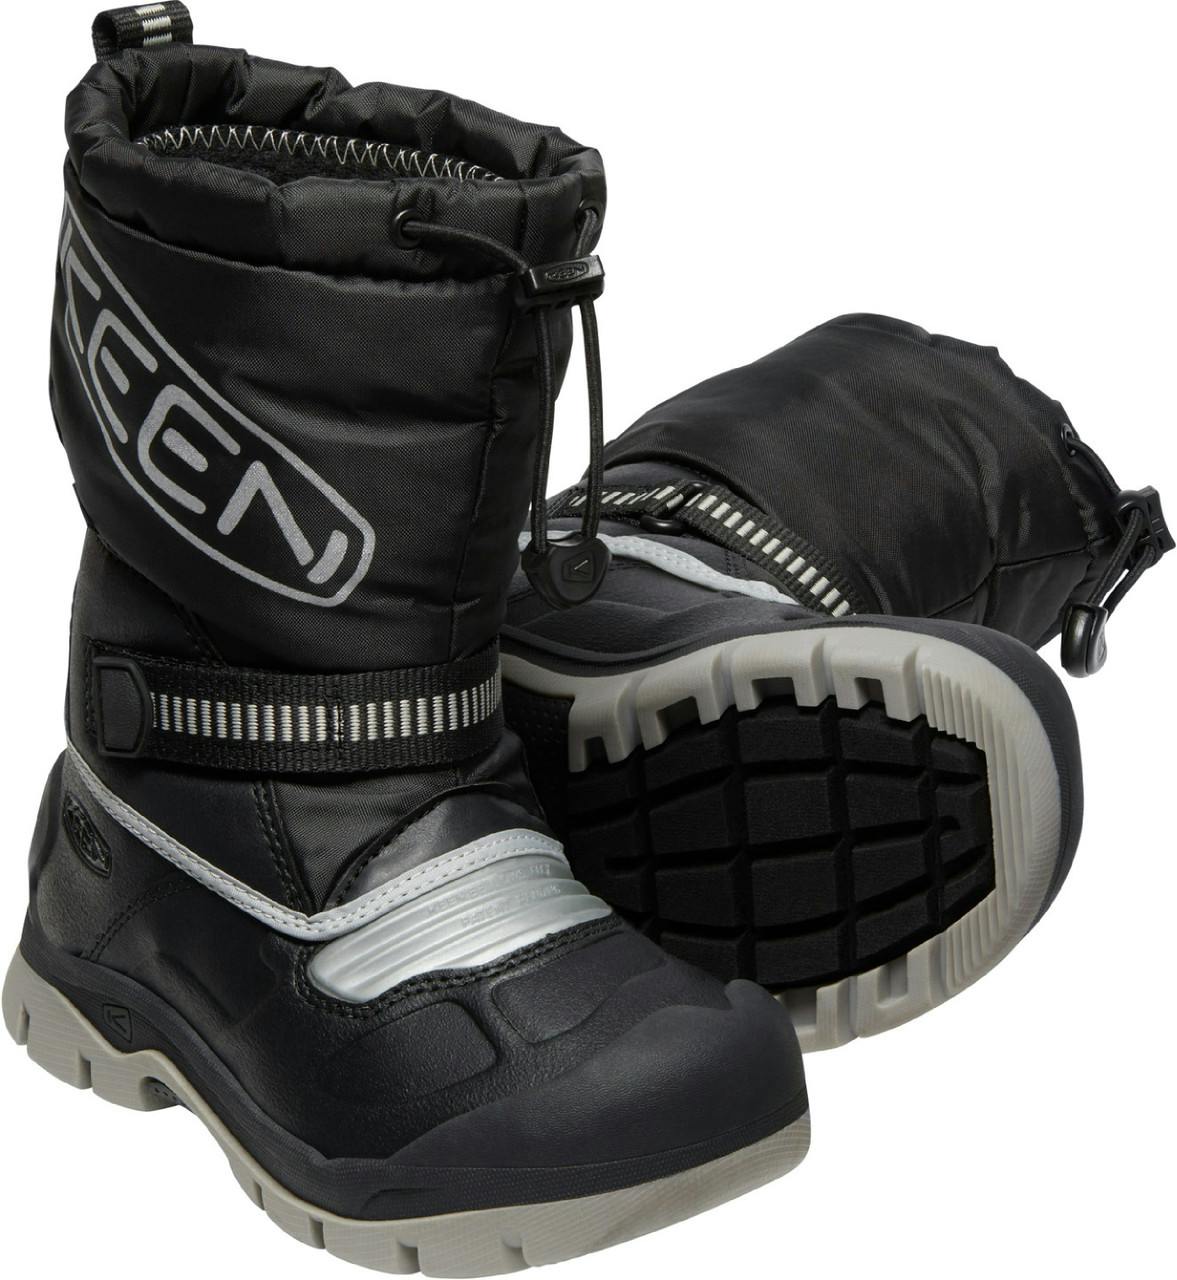 Snow Troll Waterproof Winter Boots Black/Silver